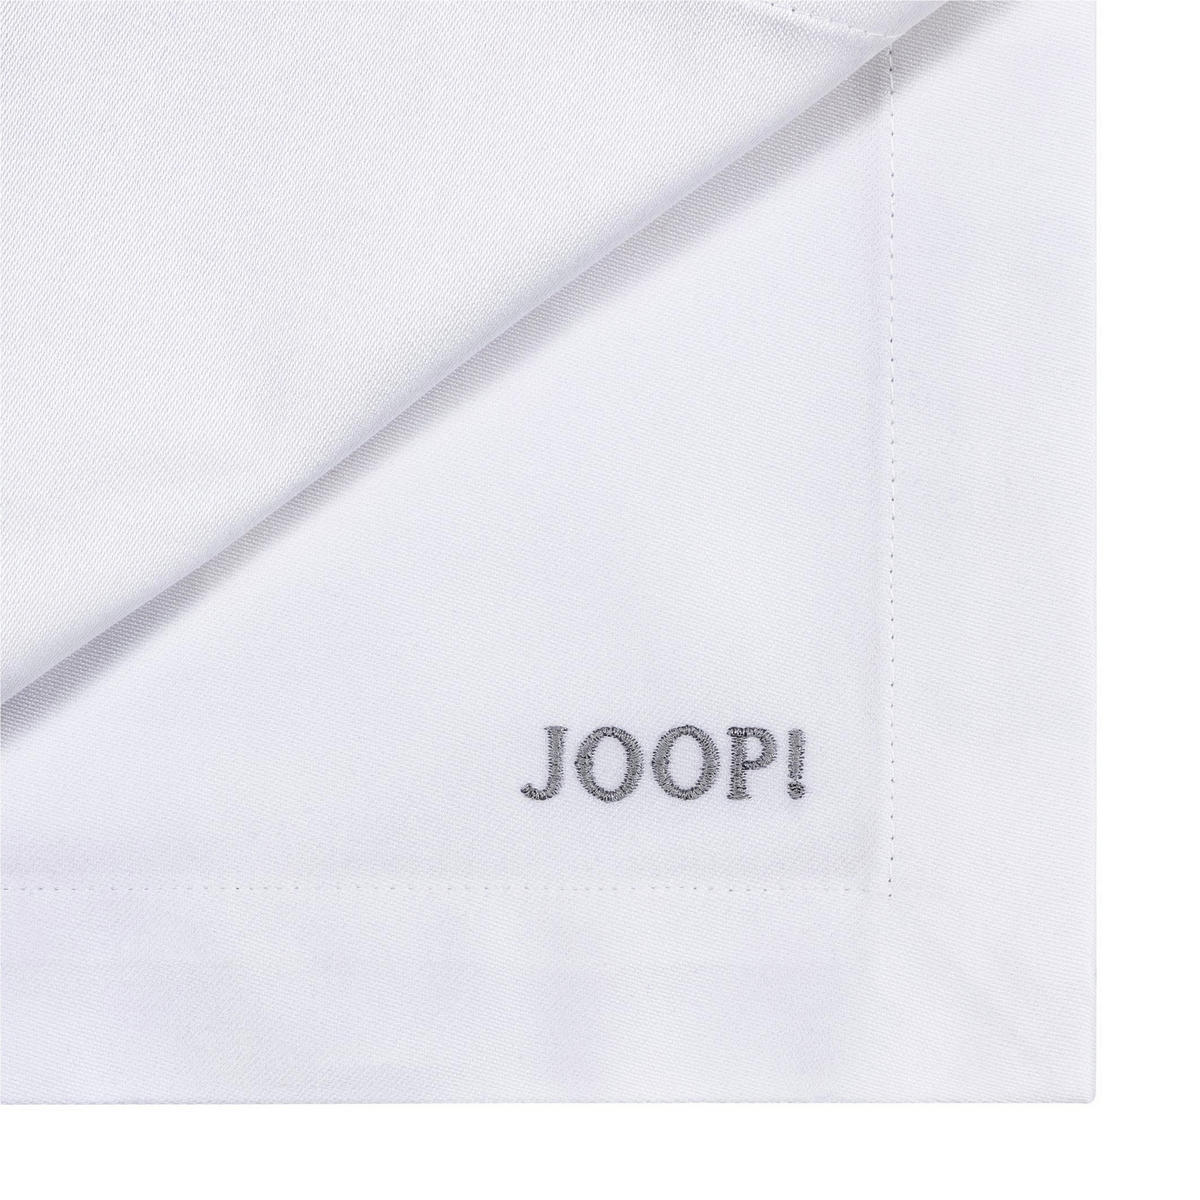 Joop! Tischset 2er Set Textil Silberfarben, Weiß 36/48 cm jetzt nur online  ➤